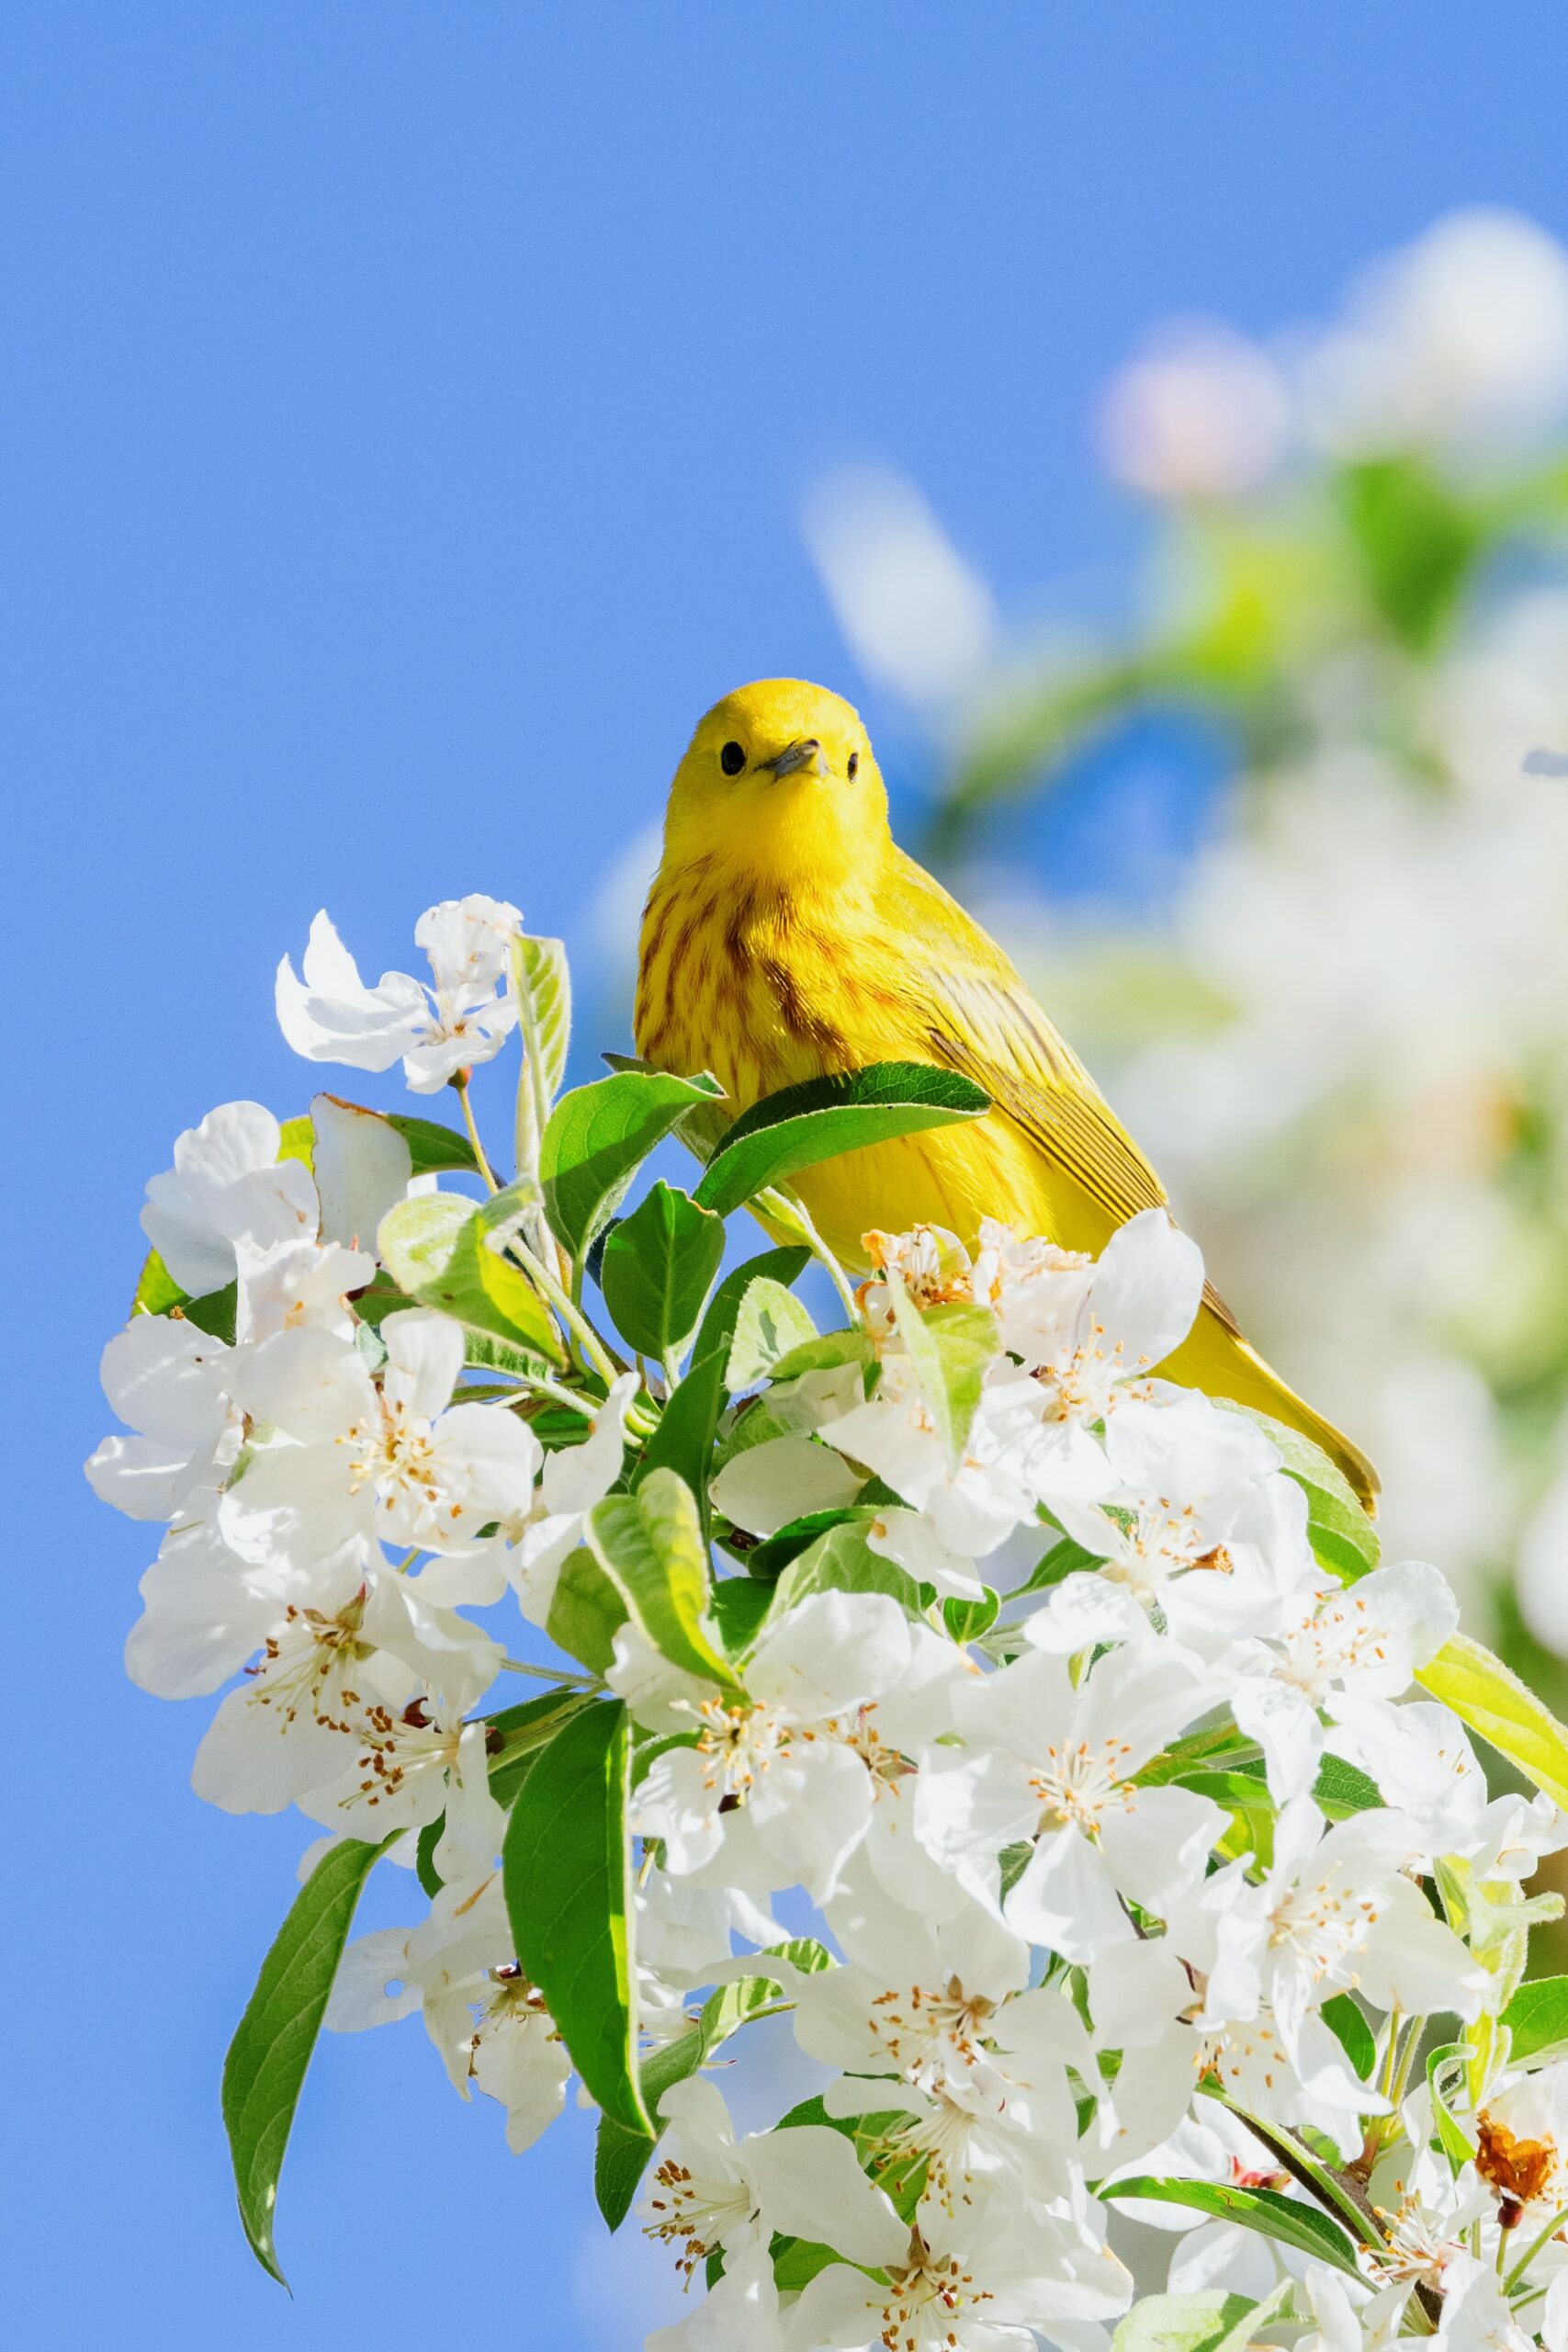 Wiosna (ptaszek) - obrazek dekoracyjny.